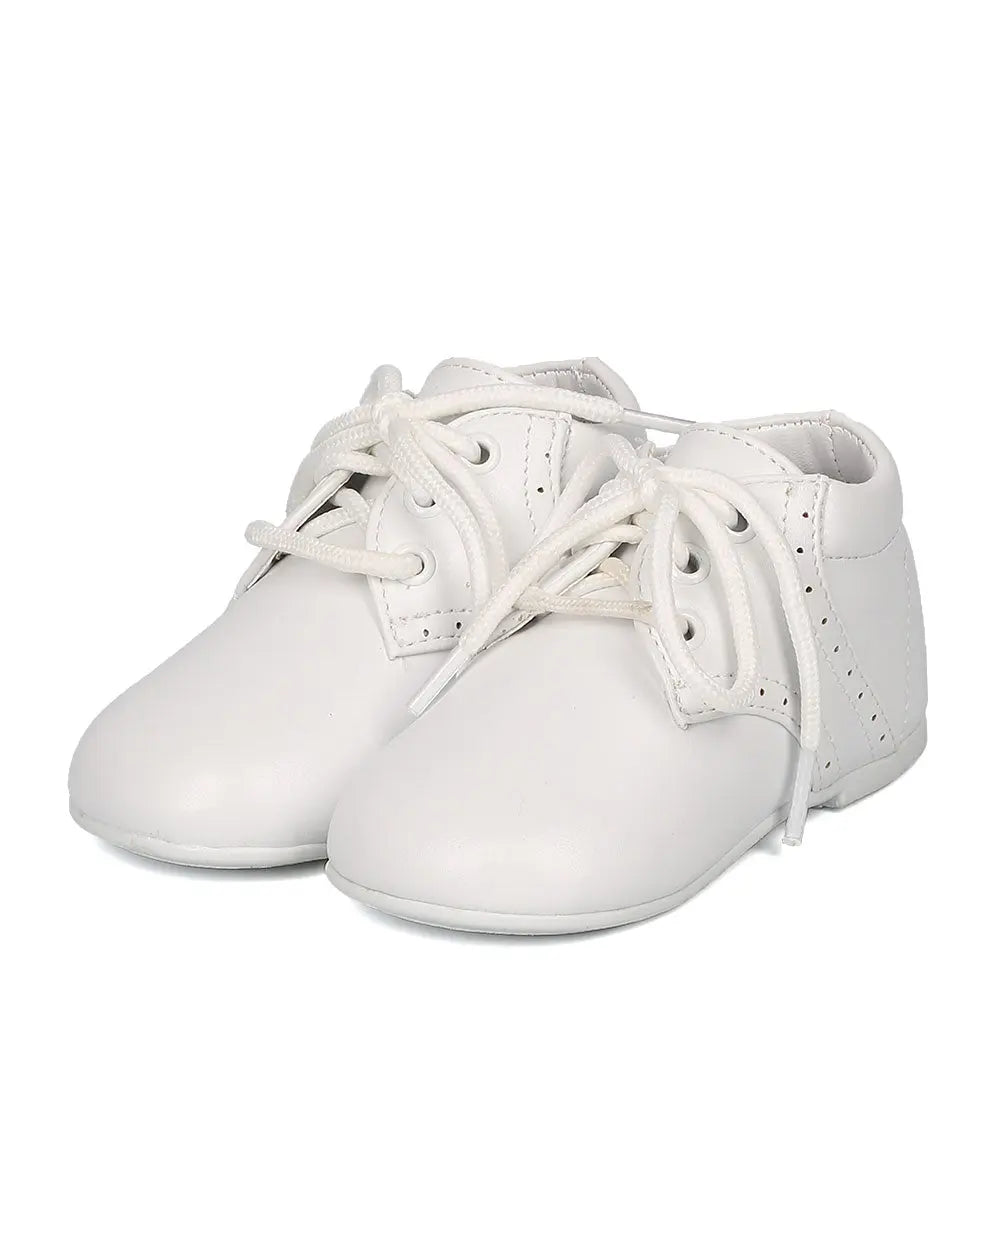 16526 - Auston Jamie-063 Leathette Round Toe Lace Up Uniform Shoe Cadiz Boutique, Inc.